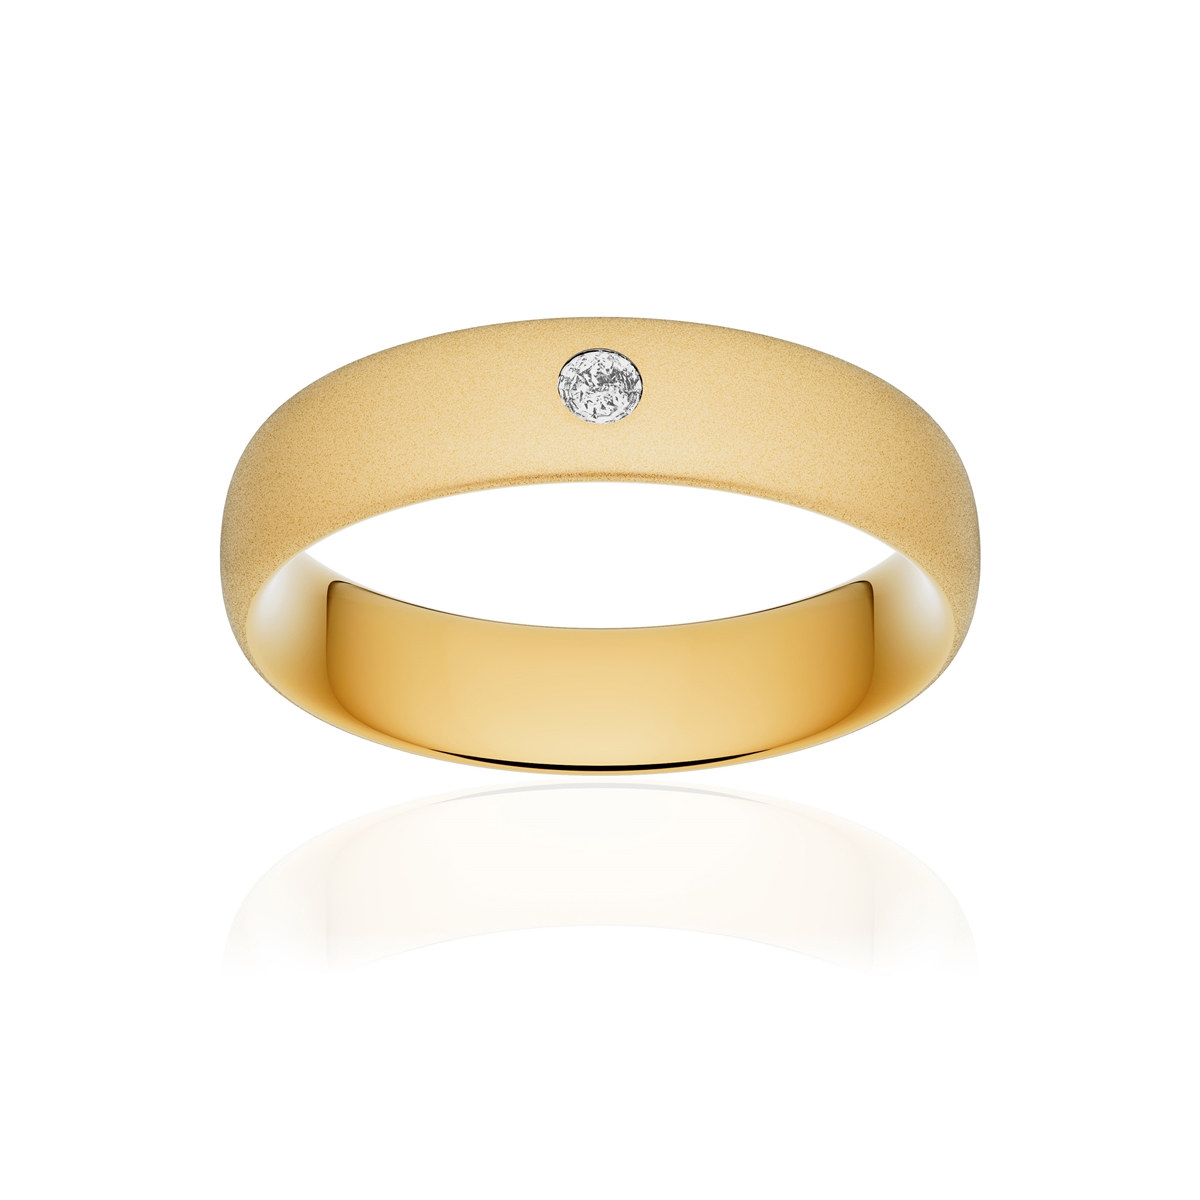 Alliance or 375 jaune sablé ruban confort 5,5mm diamant brillant